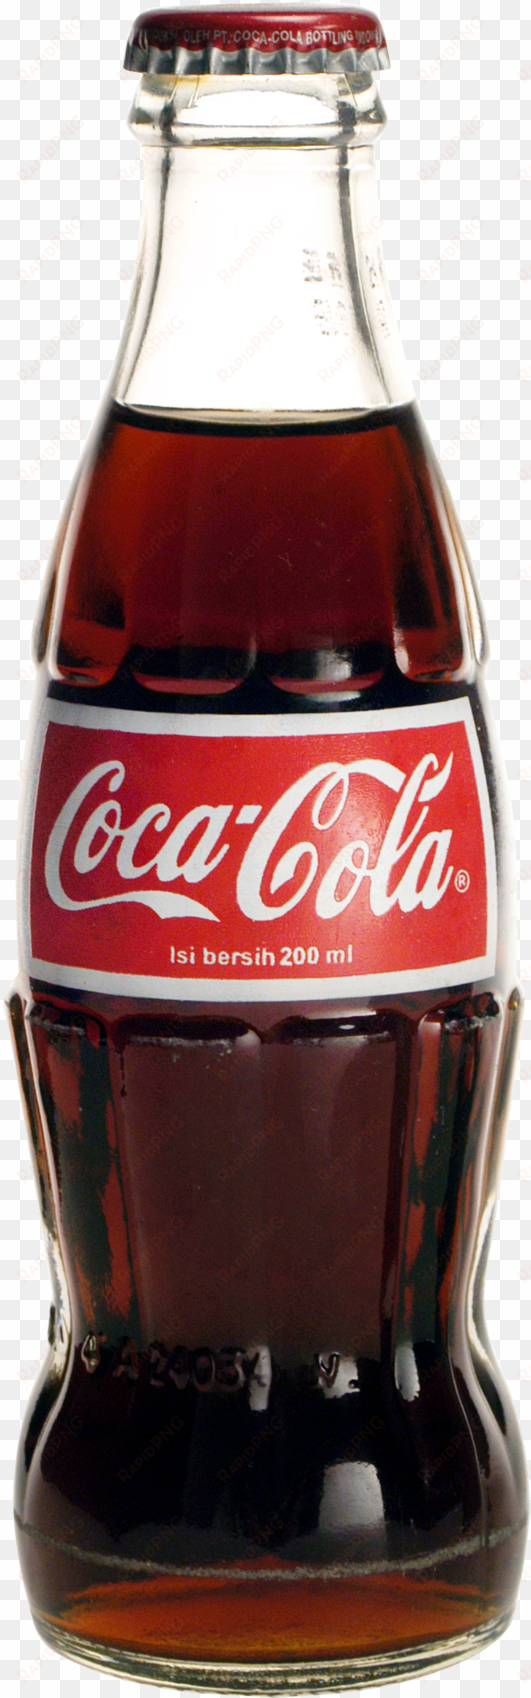 cocacola bottle vector coca-cola - coca cola con vector